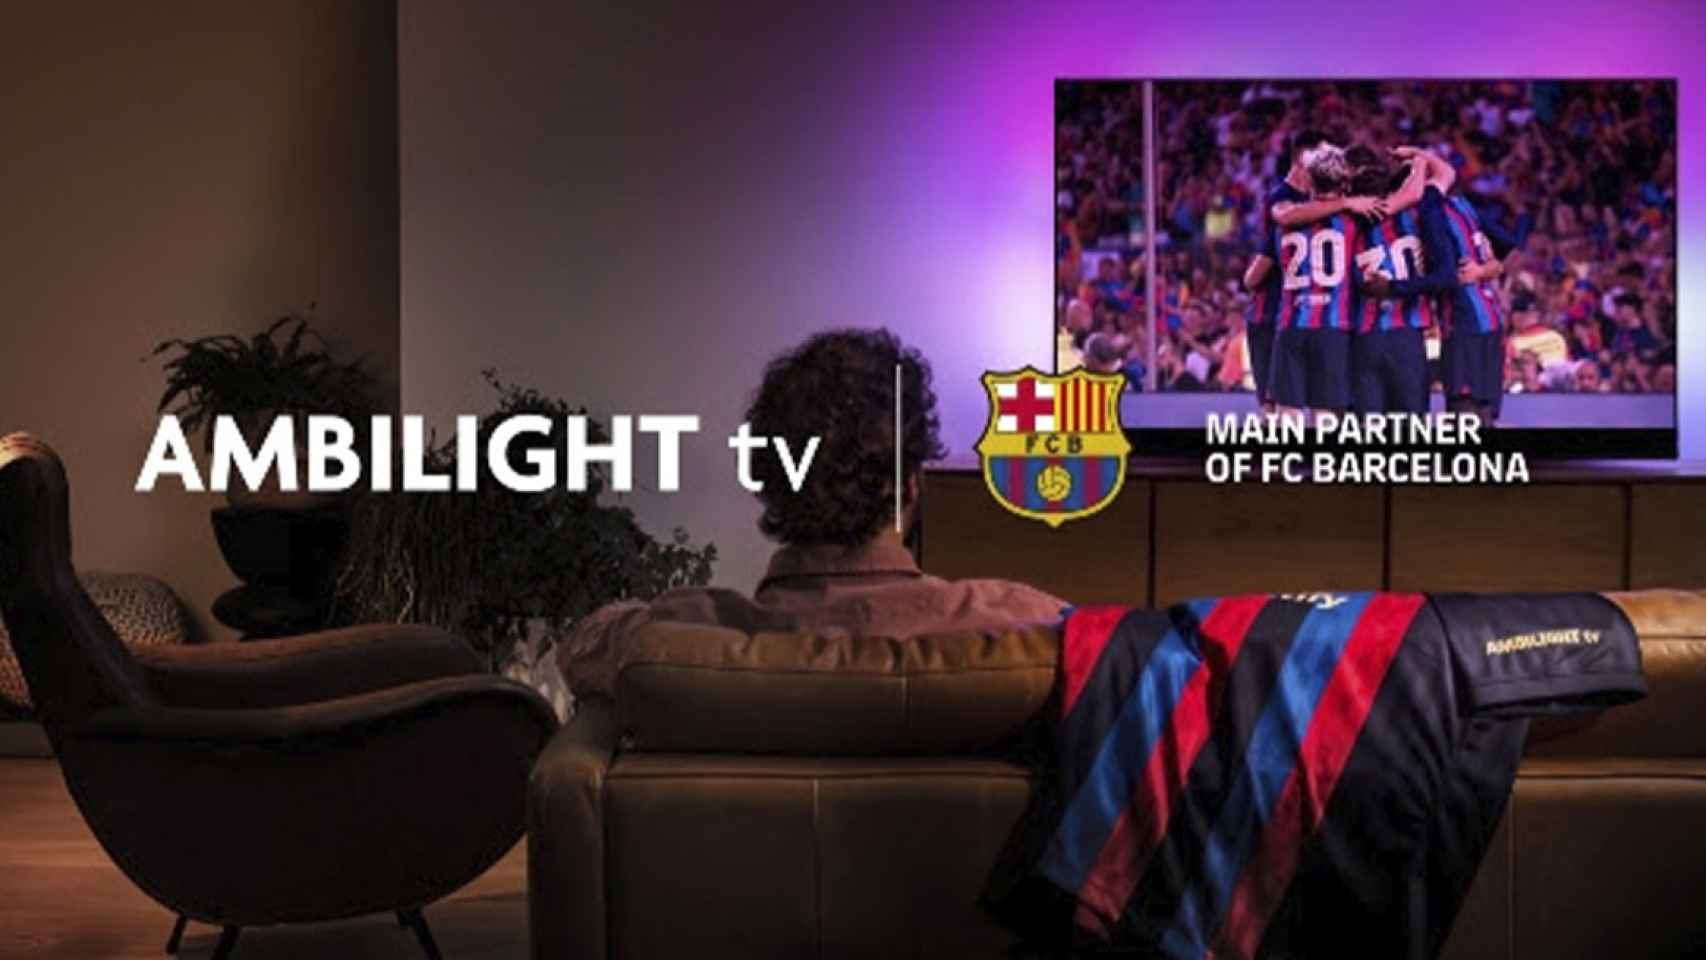 Imagen promocional de Ambilight TV y el FC Barcelona